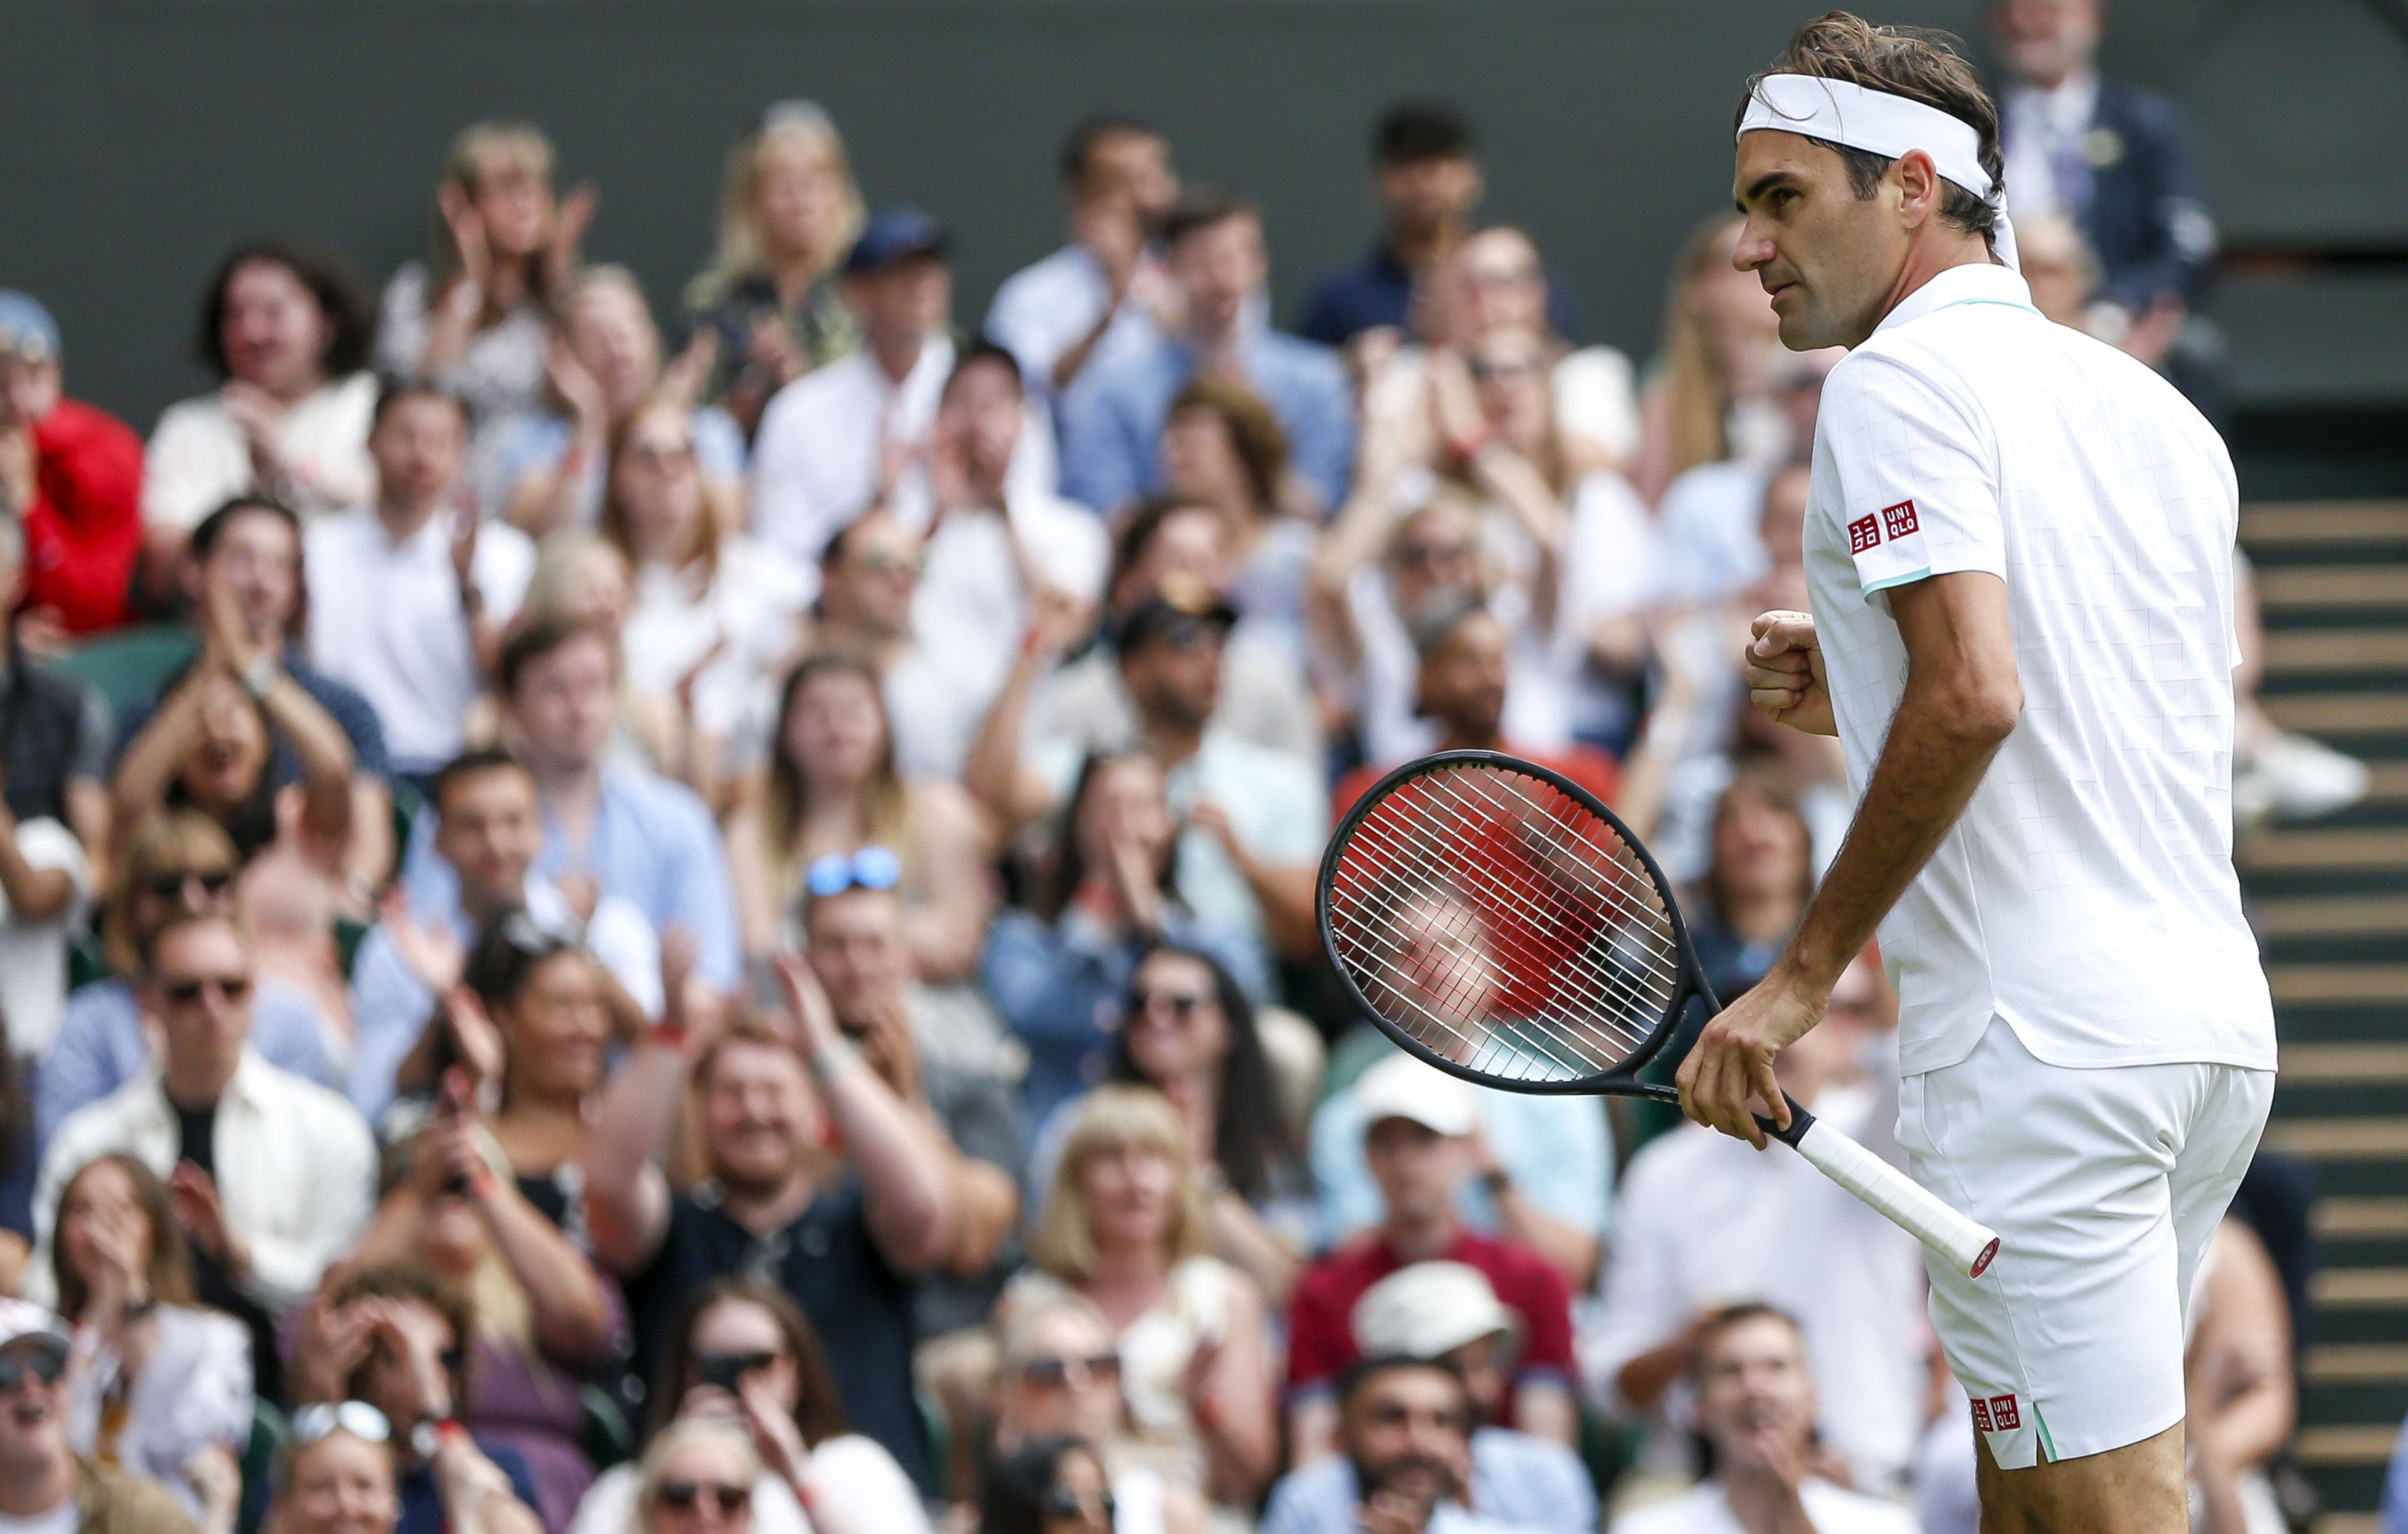 Federert búcsúztatja a sportvilág/ Fotó: Northfoto